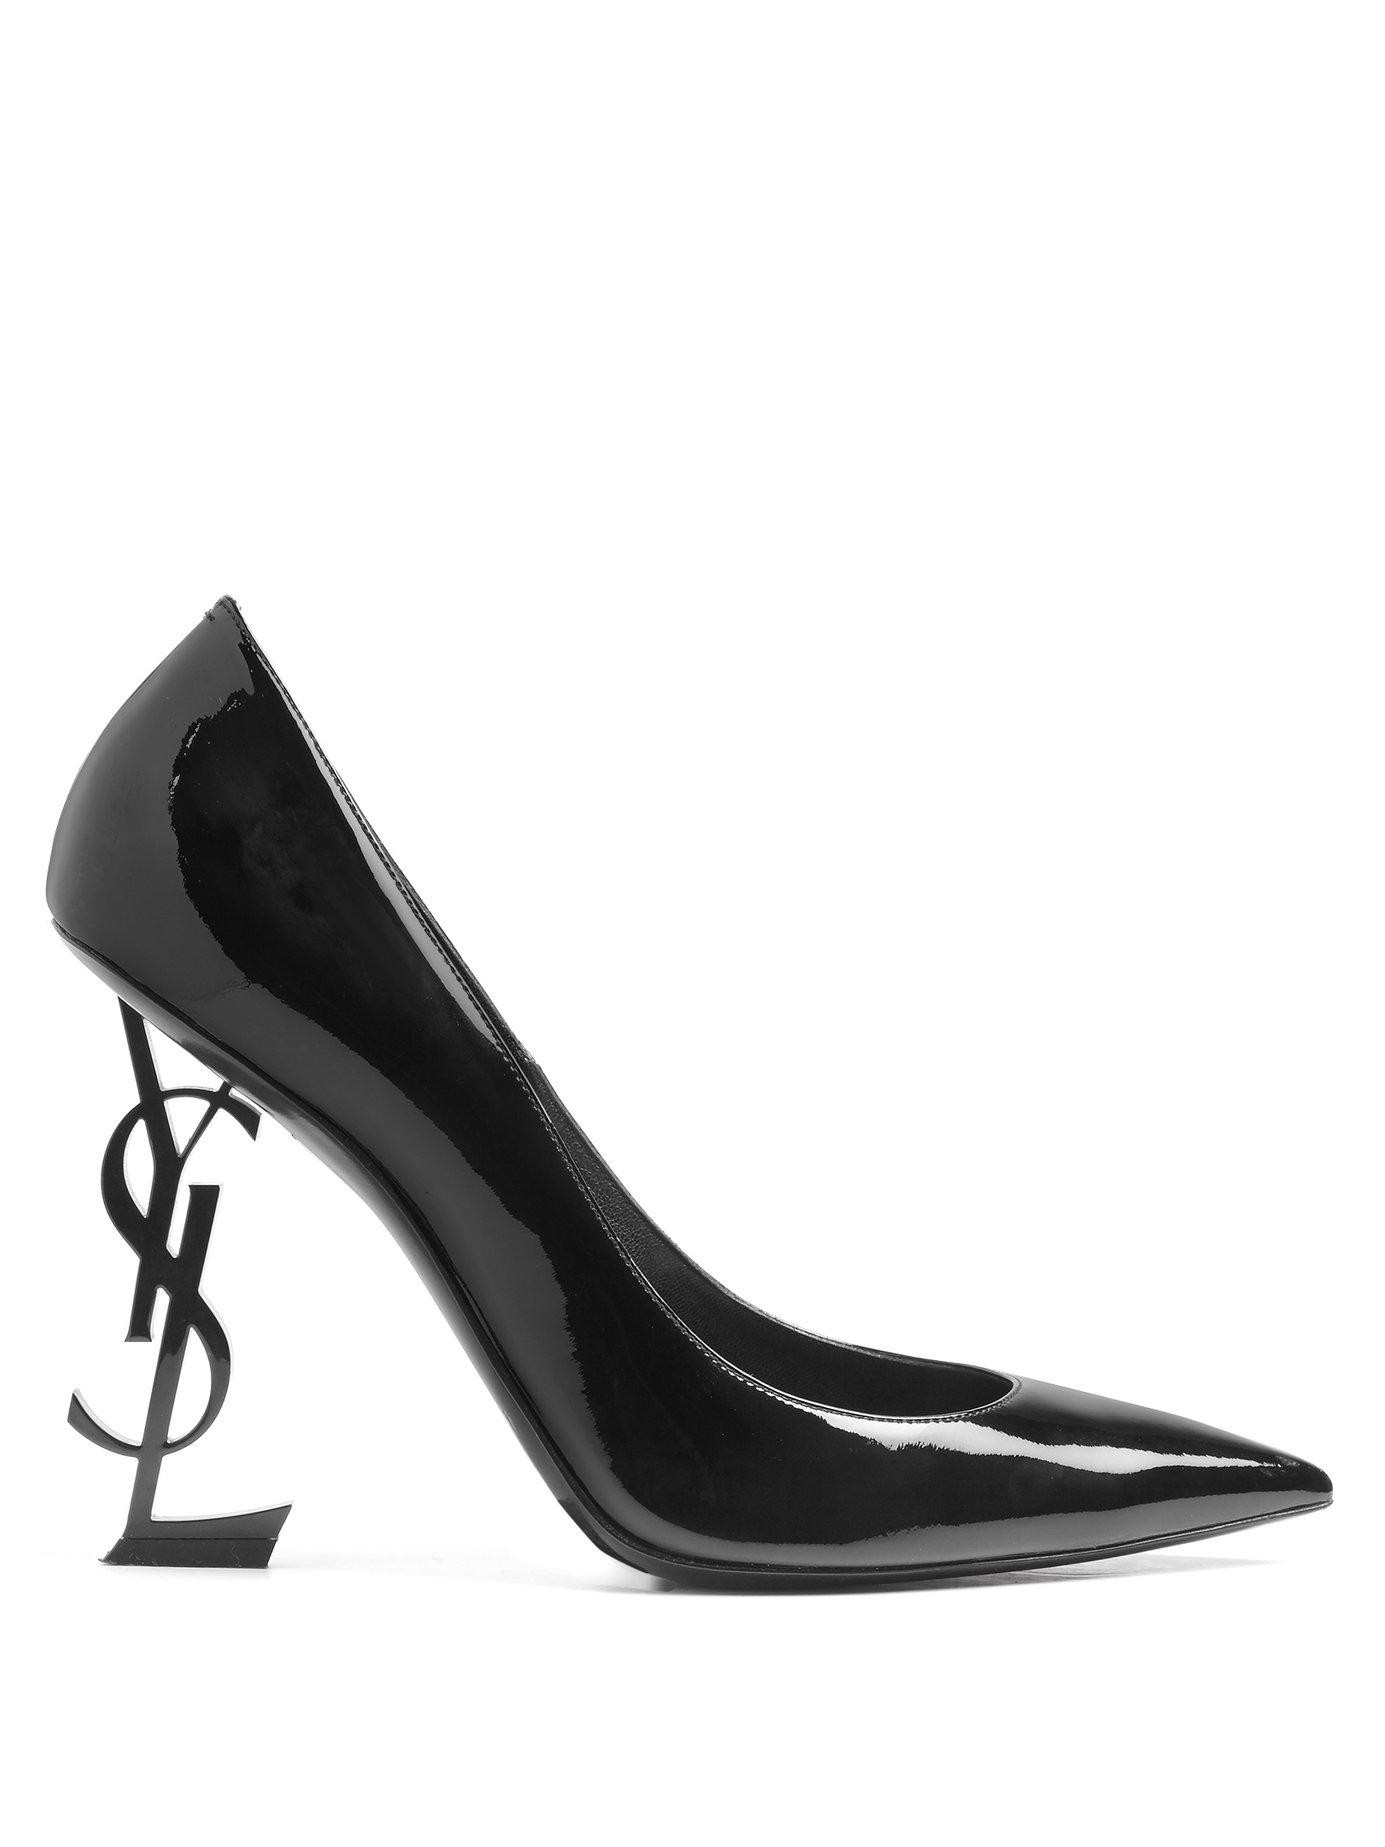 Escarpins Opyum 85 en cuir Cuir Saint Laurent en coloris Marron Femme Chaussures à talons Chaussures à talons Saint Laurent 